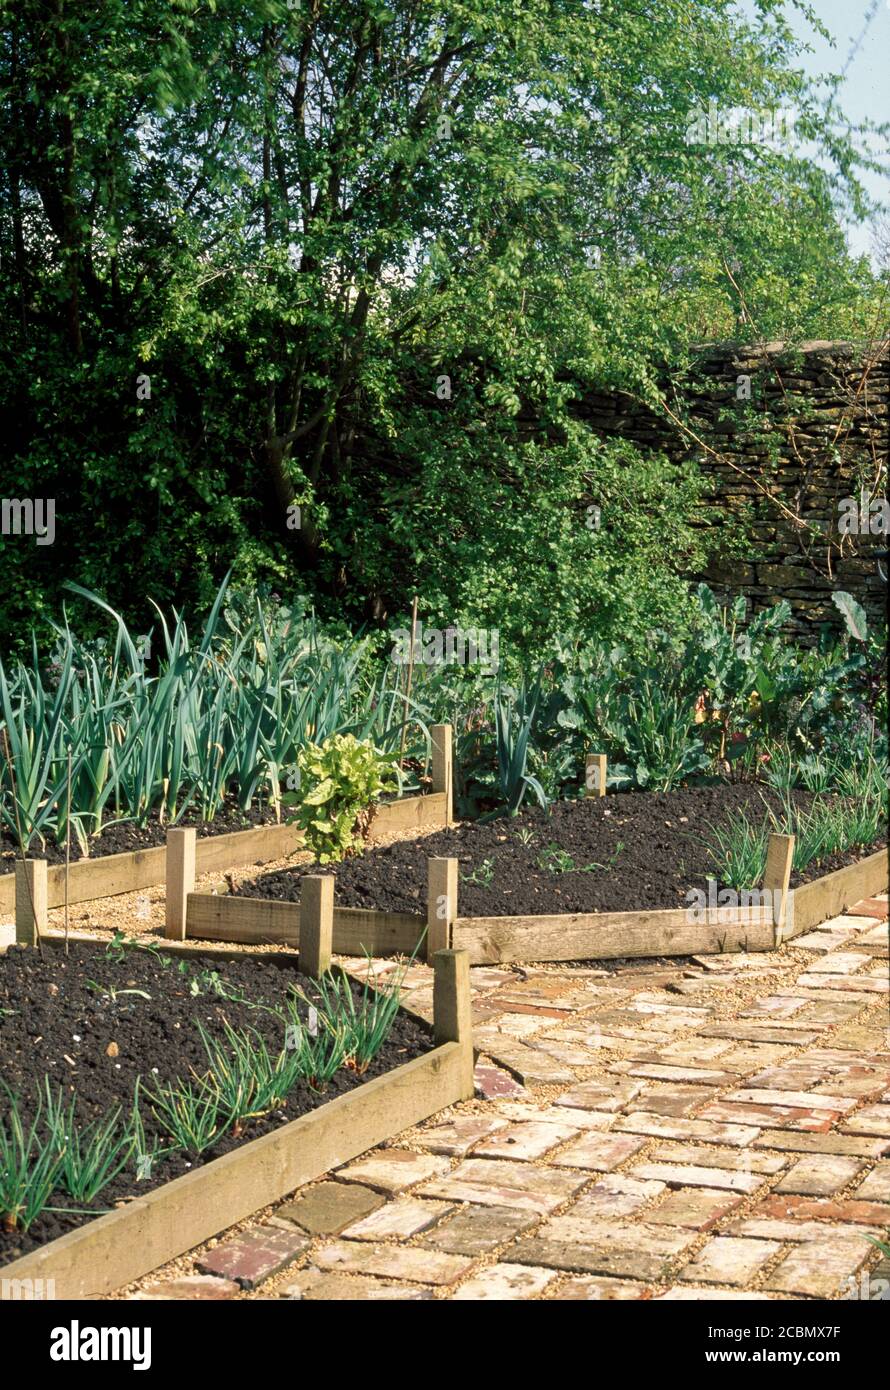 Jardín de verduras con camas elevadas de madera y pavimento de ladrillo Foto de stock